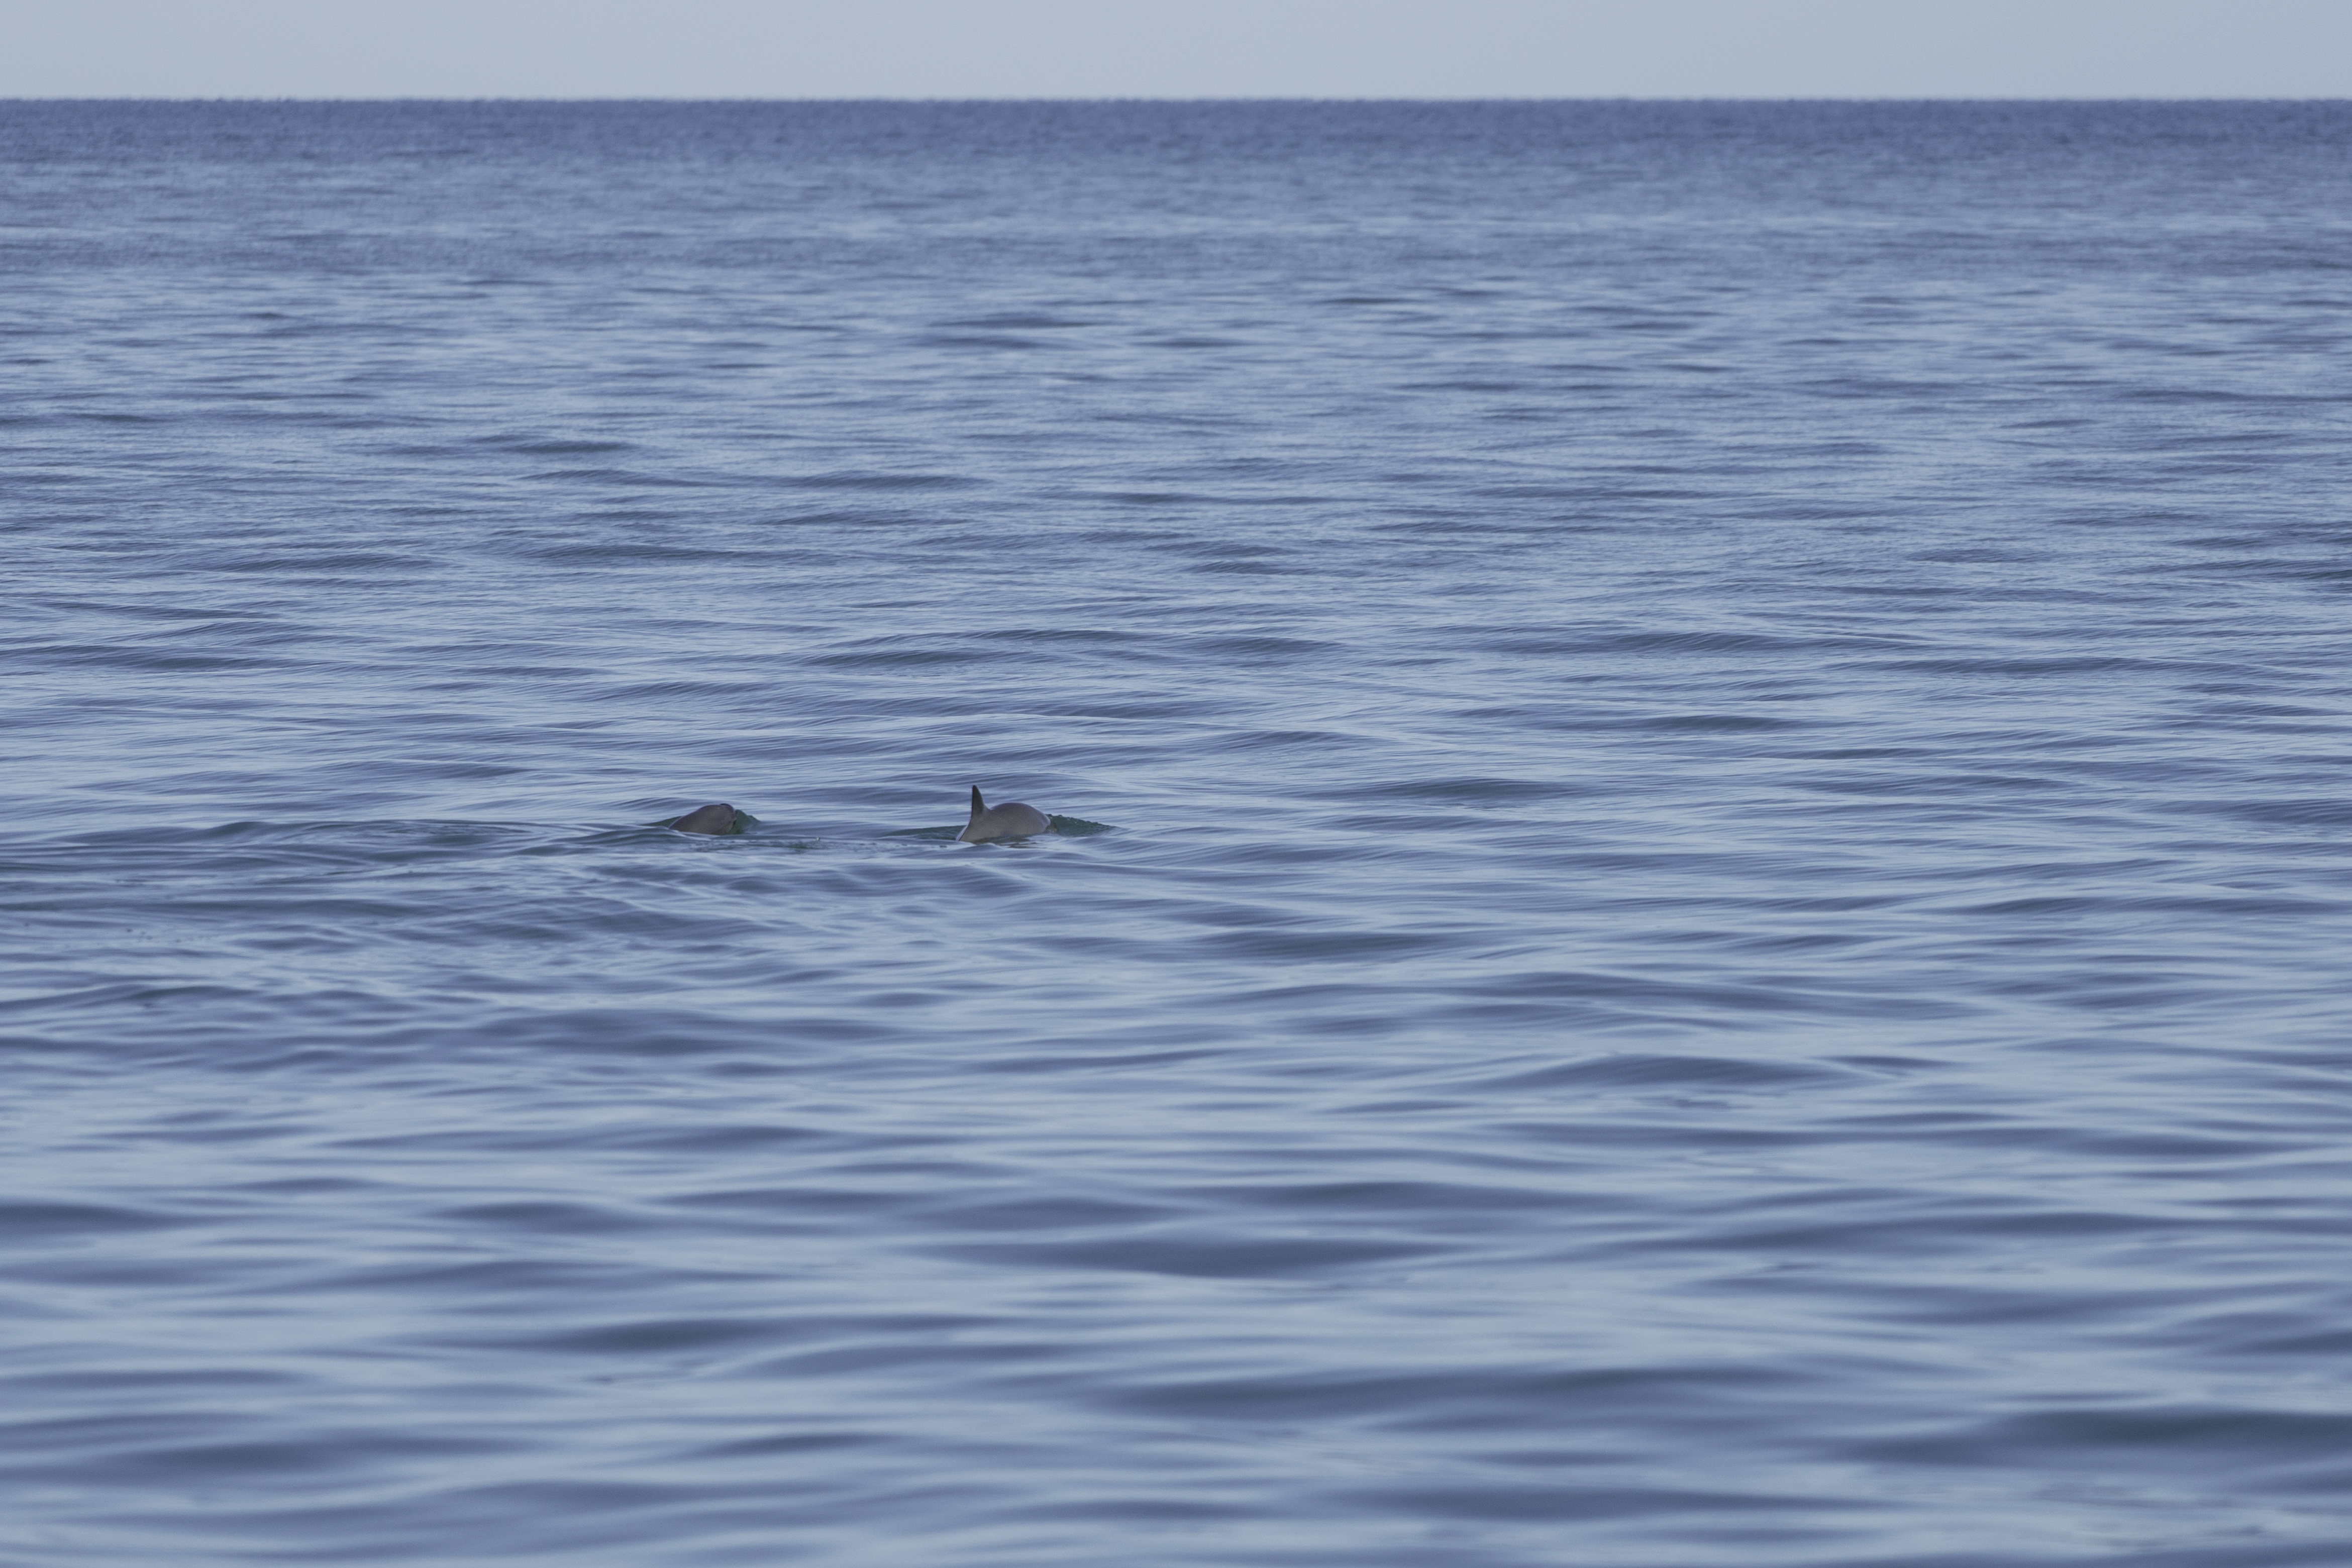 <p><strong>Вакита</strong></p>

<p>Вакита е от семейството на морските свине и е от най-редките морски бозайници в света. Този вид делфини имат голям тъмен пръстен около очите и тъмни петна по устните, които образуват тънка линия от устата до гръдните перки. Най-често се намират в близост до брега в плитките води на Персийския залив.<br />
Смята се, че от този вид делфини в дивата природа са останали само 10 екземпляра. Видът е открит през 1958г. и малко повече от половин век по-късно те са на път да изчезнат напълно.<br />
Рибарските мрежи, пестицидите и кръвосмешенията заради изключително свитата популация са основните причини за бързото изчезване на този вид.</p>